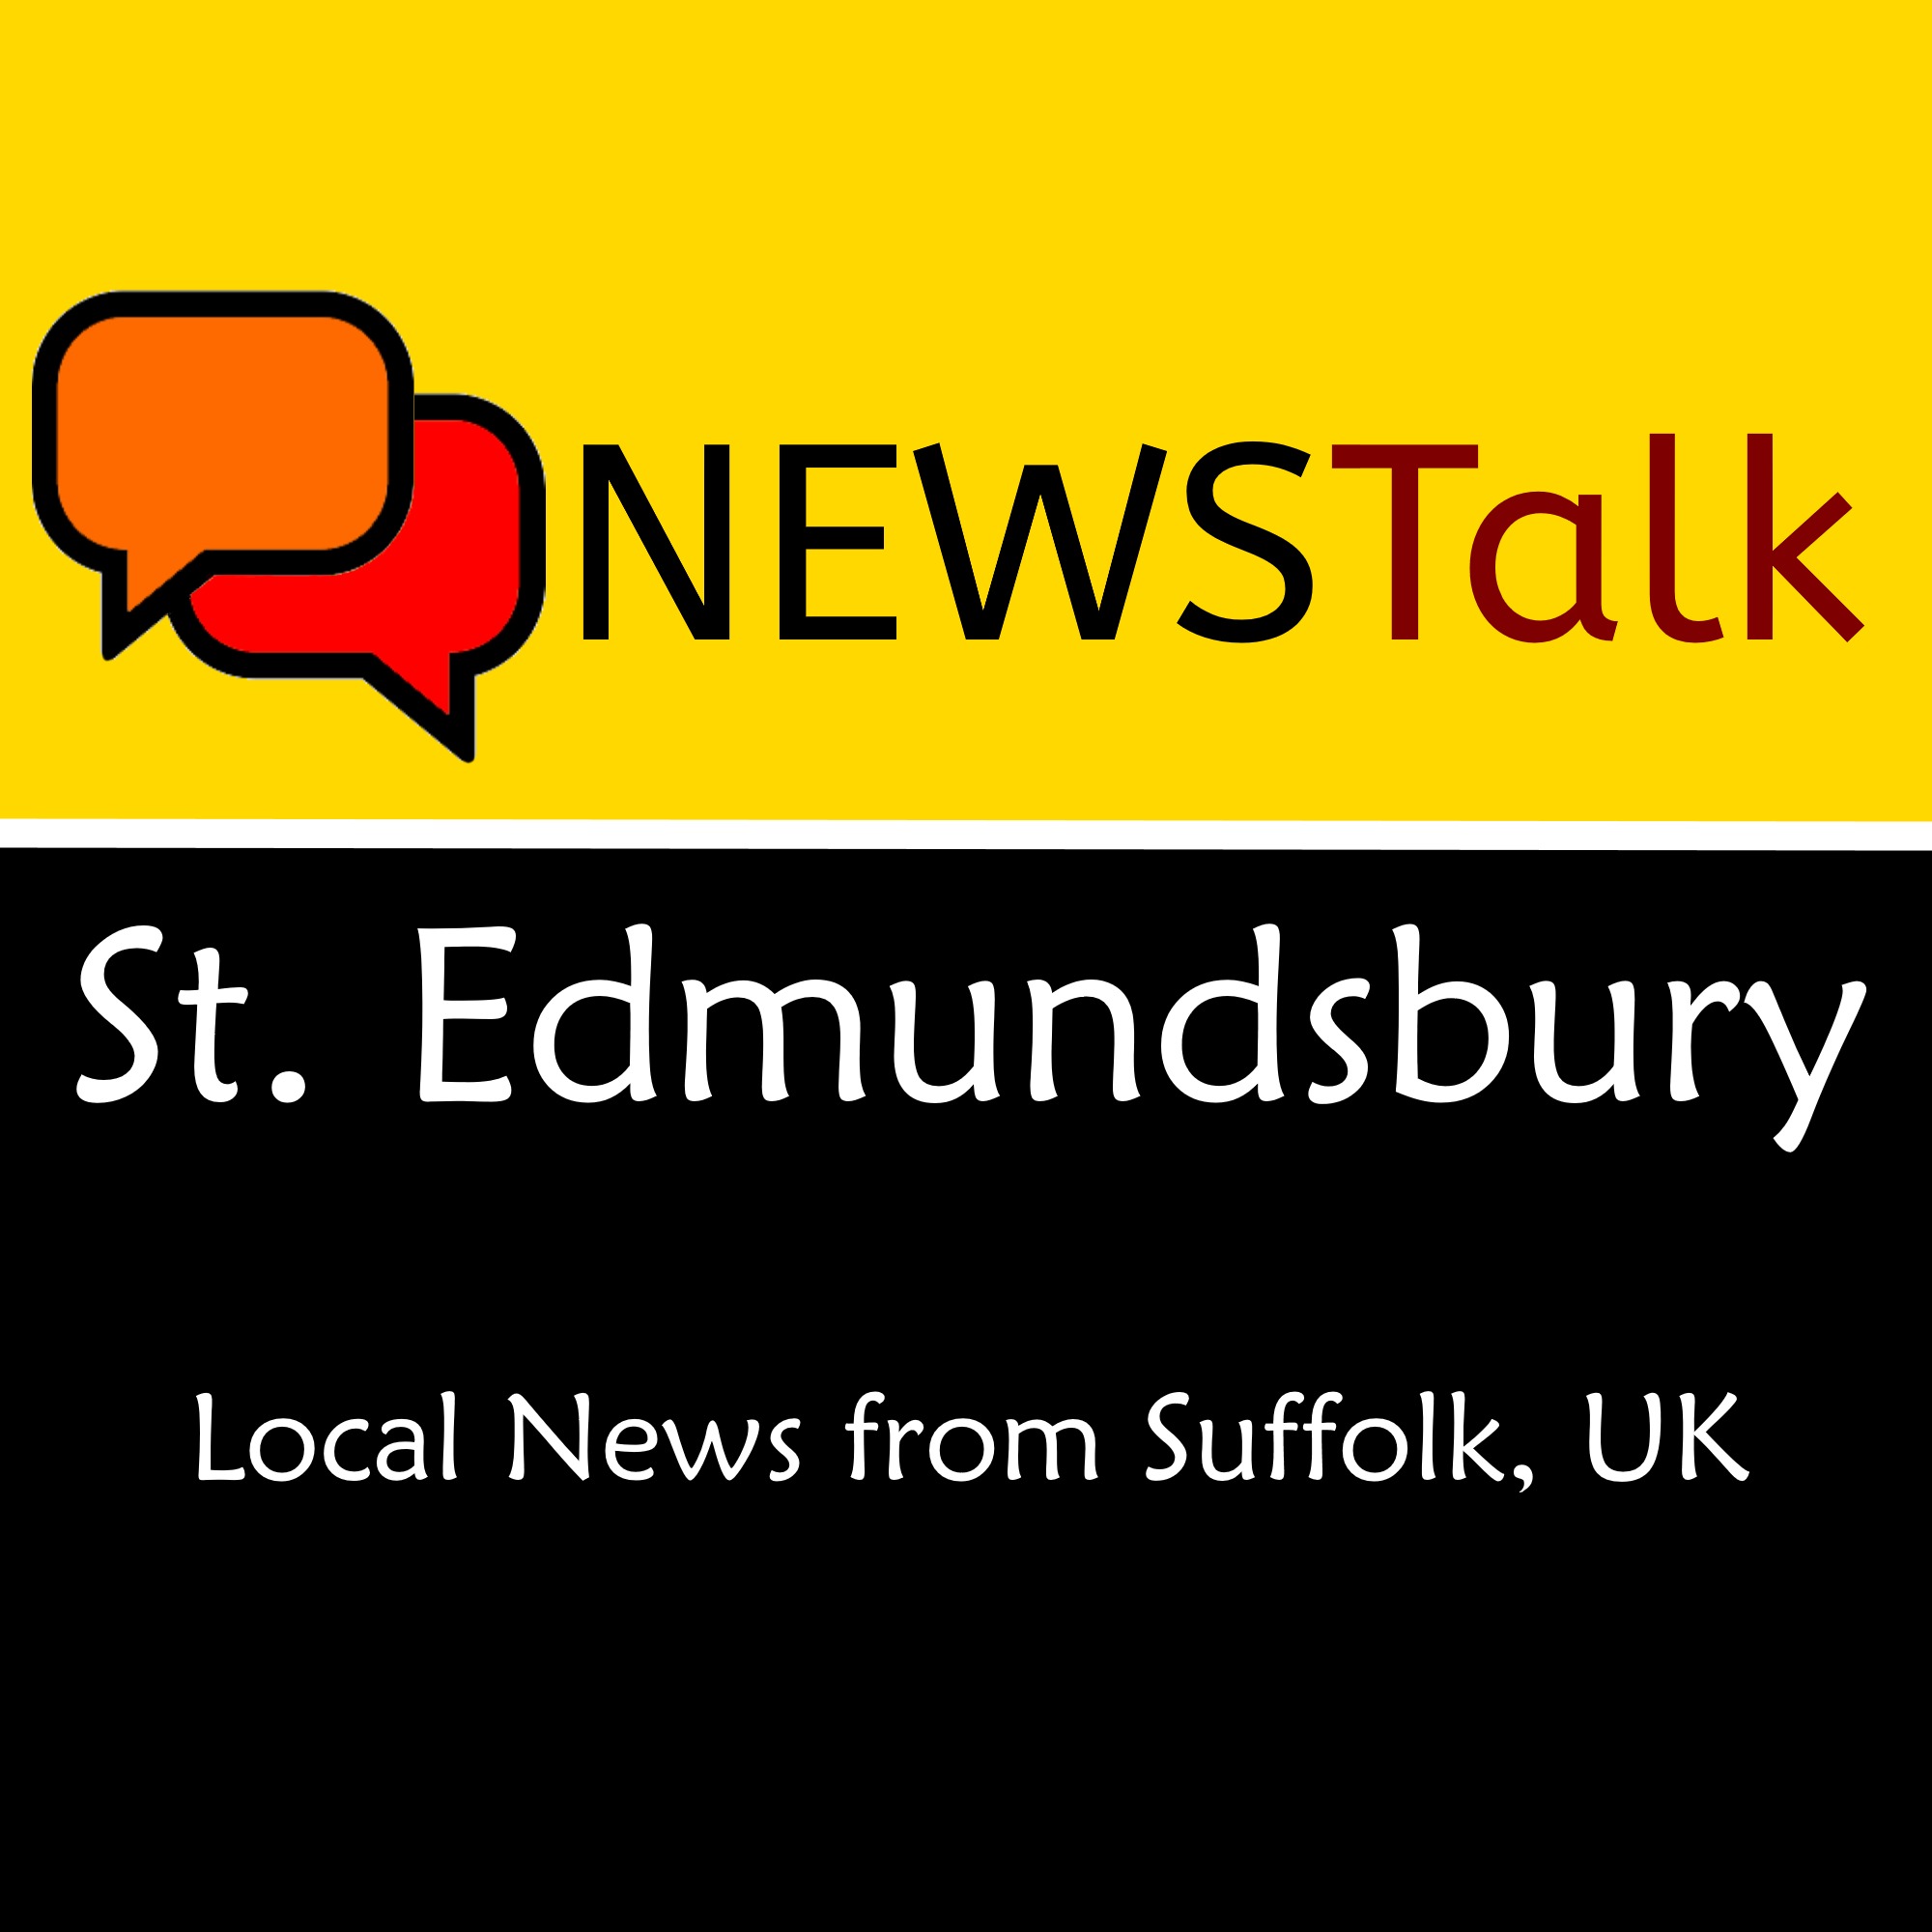 St Edmundsbury News Talk